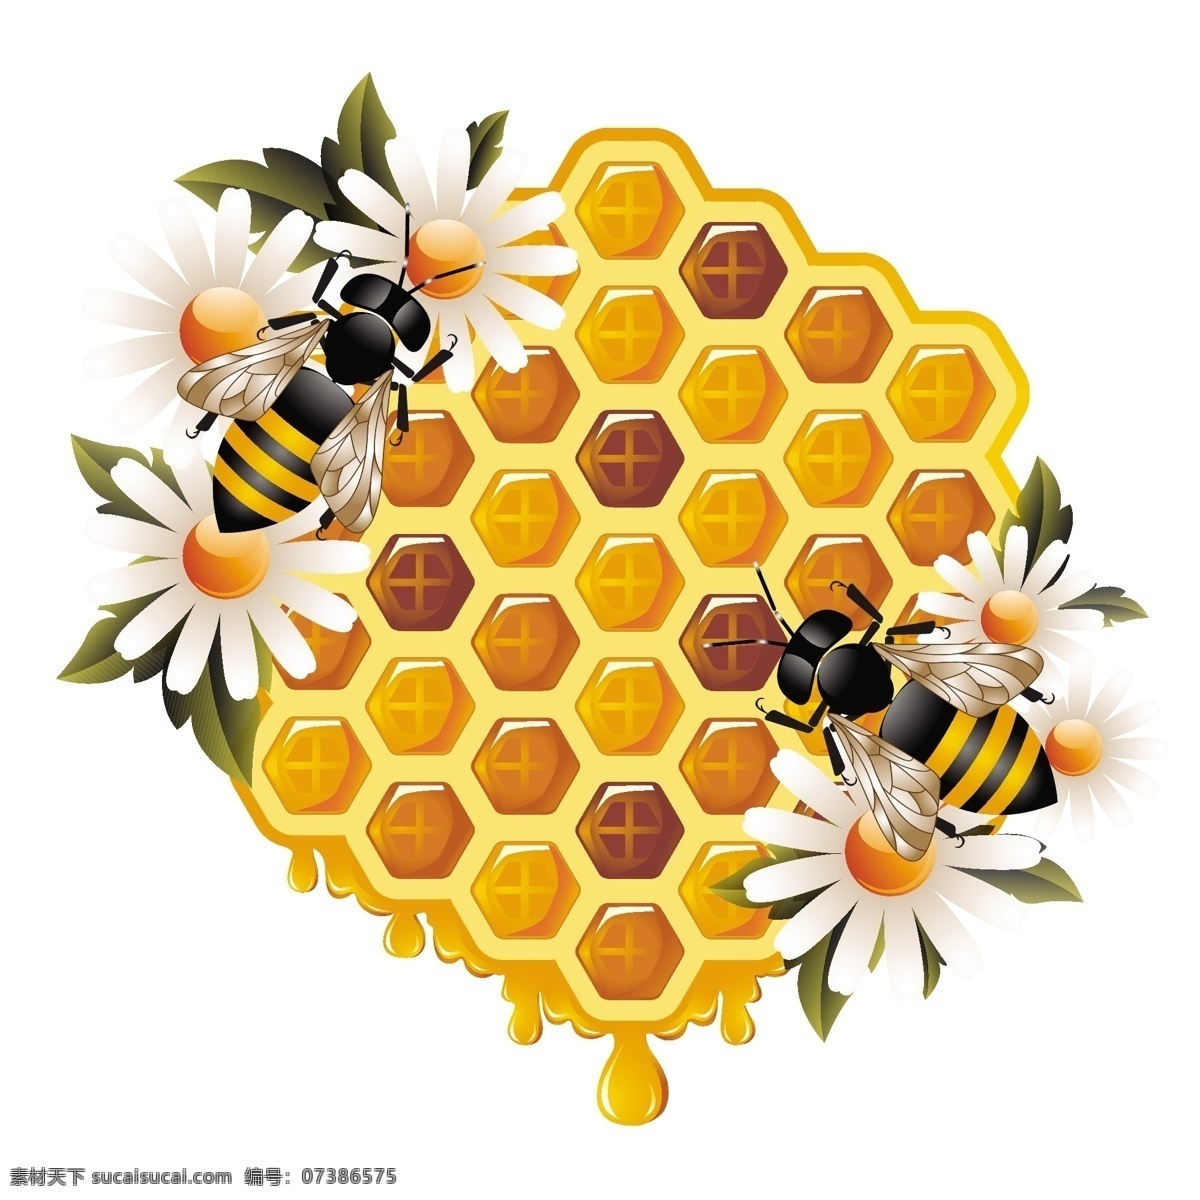 蜜蜂鲜花蜂巢 蜜蜂 鲜花 蜂巢 绿叶 菊花 花朵 花卉 时尚 潮流 梦幻 背景 底纹 矢量 蜜蜂主题 昆虫 生物世界